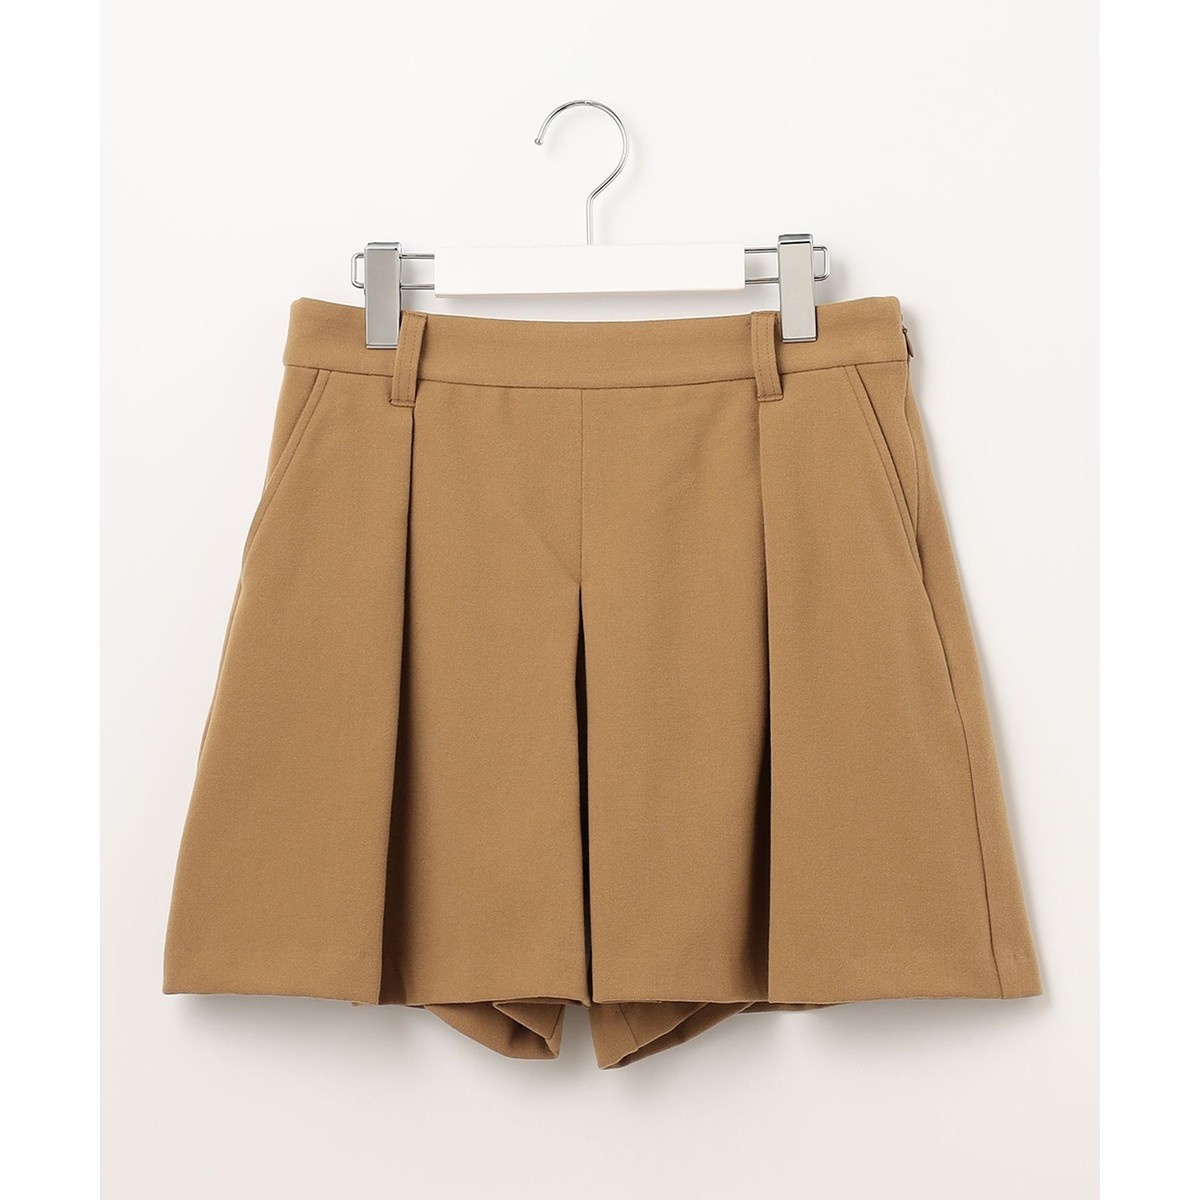 キュロットスカート の通販 | ファッション通販 マルイウェブチャネル